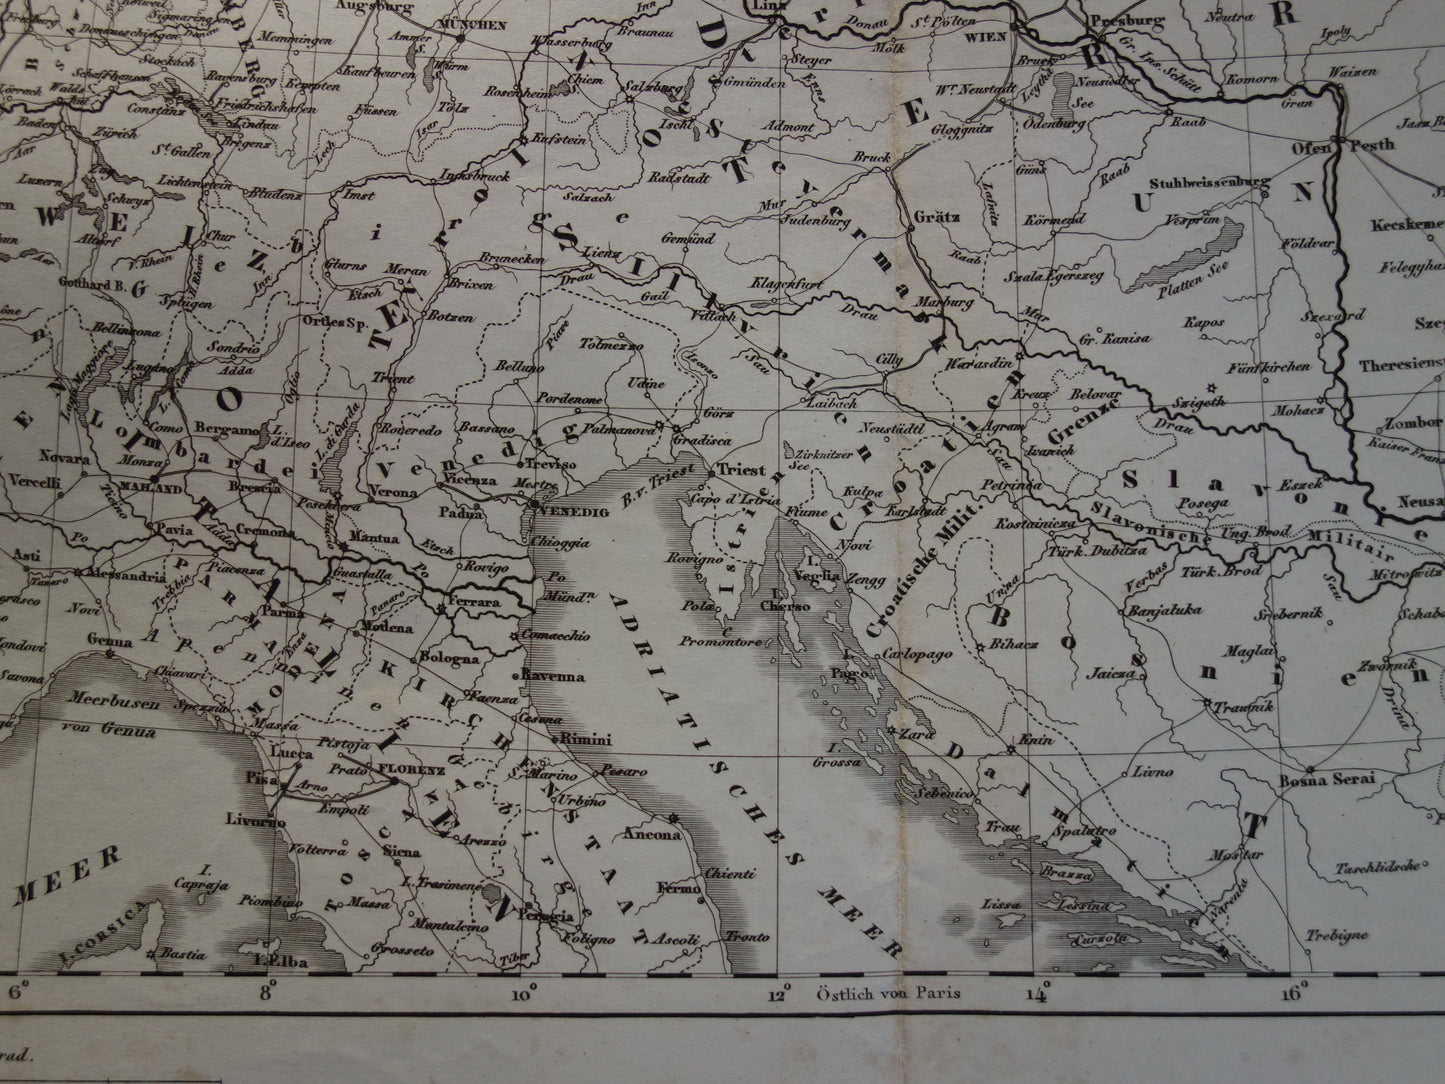 Antieke kaart van Spoorwegen in Nederland Duitsland originele 170+ jaar oude landkaart spoorlijnen centraal Europa spoorkaart